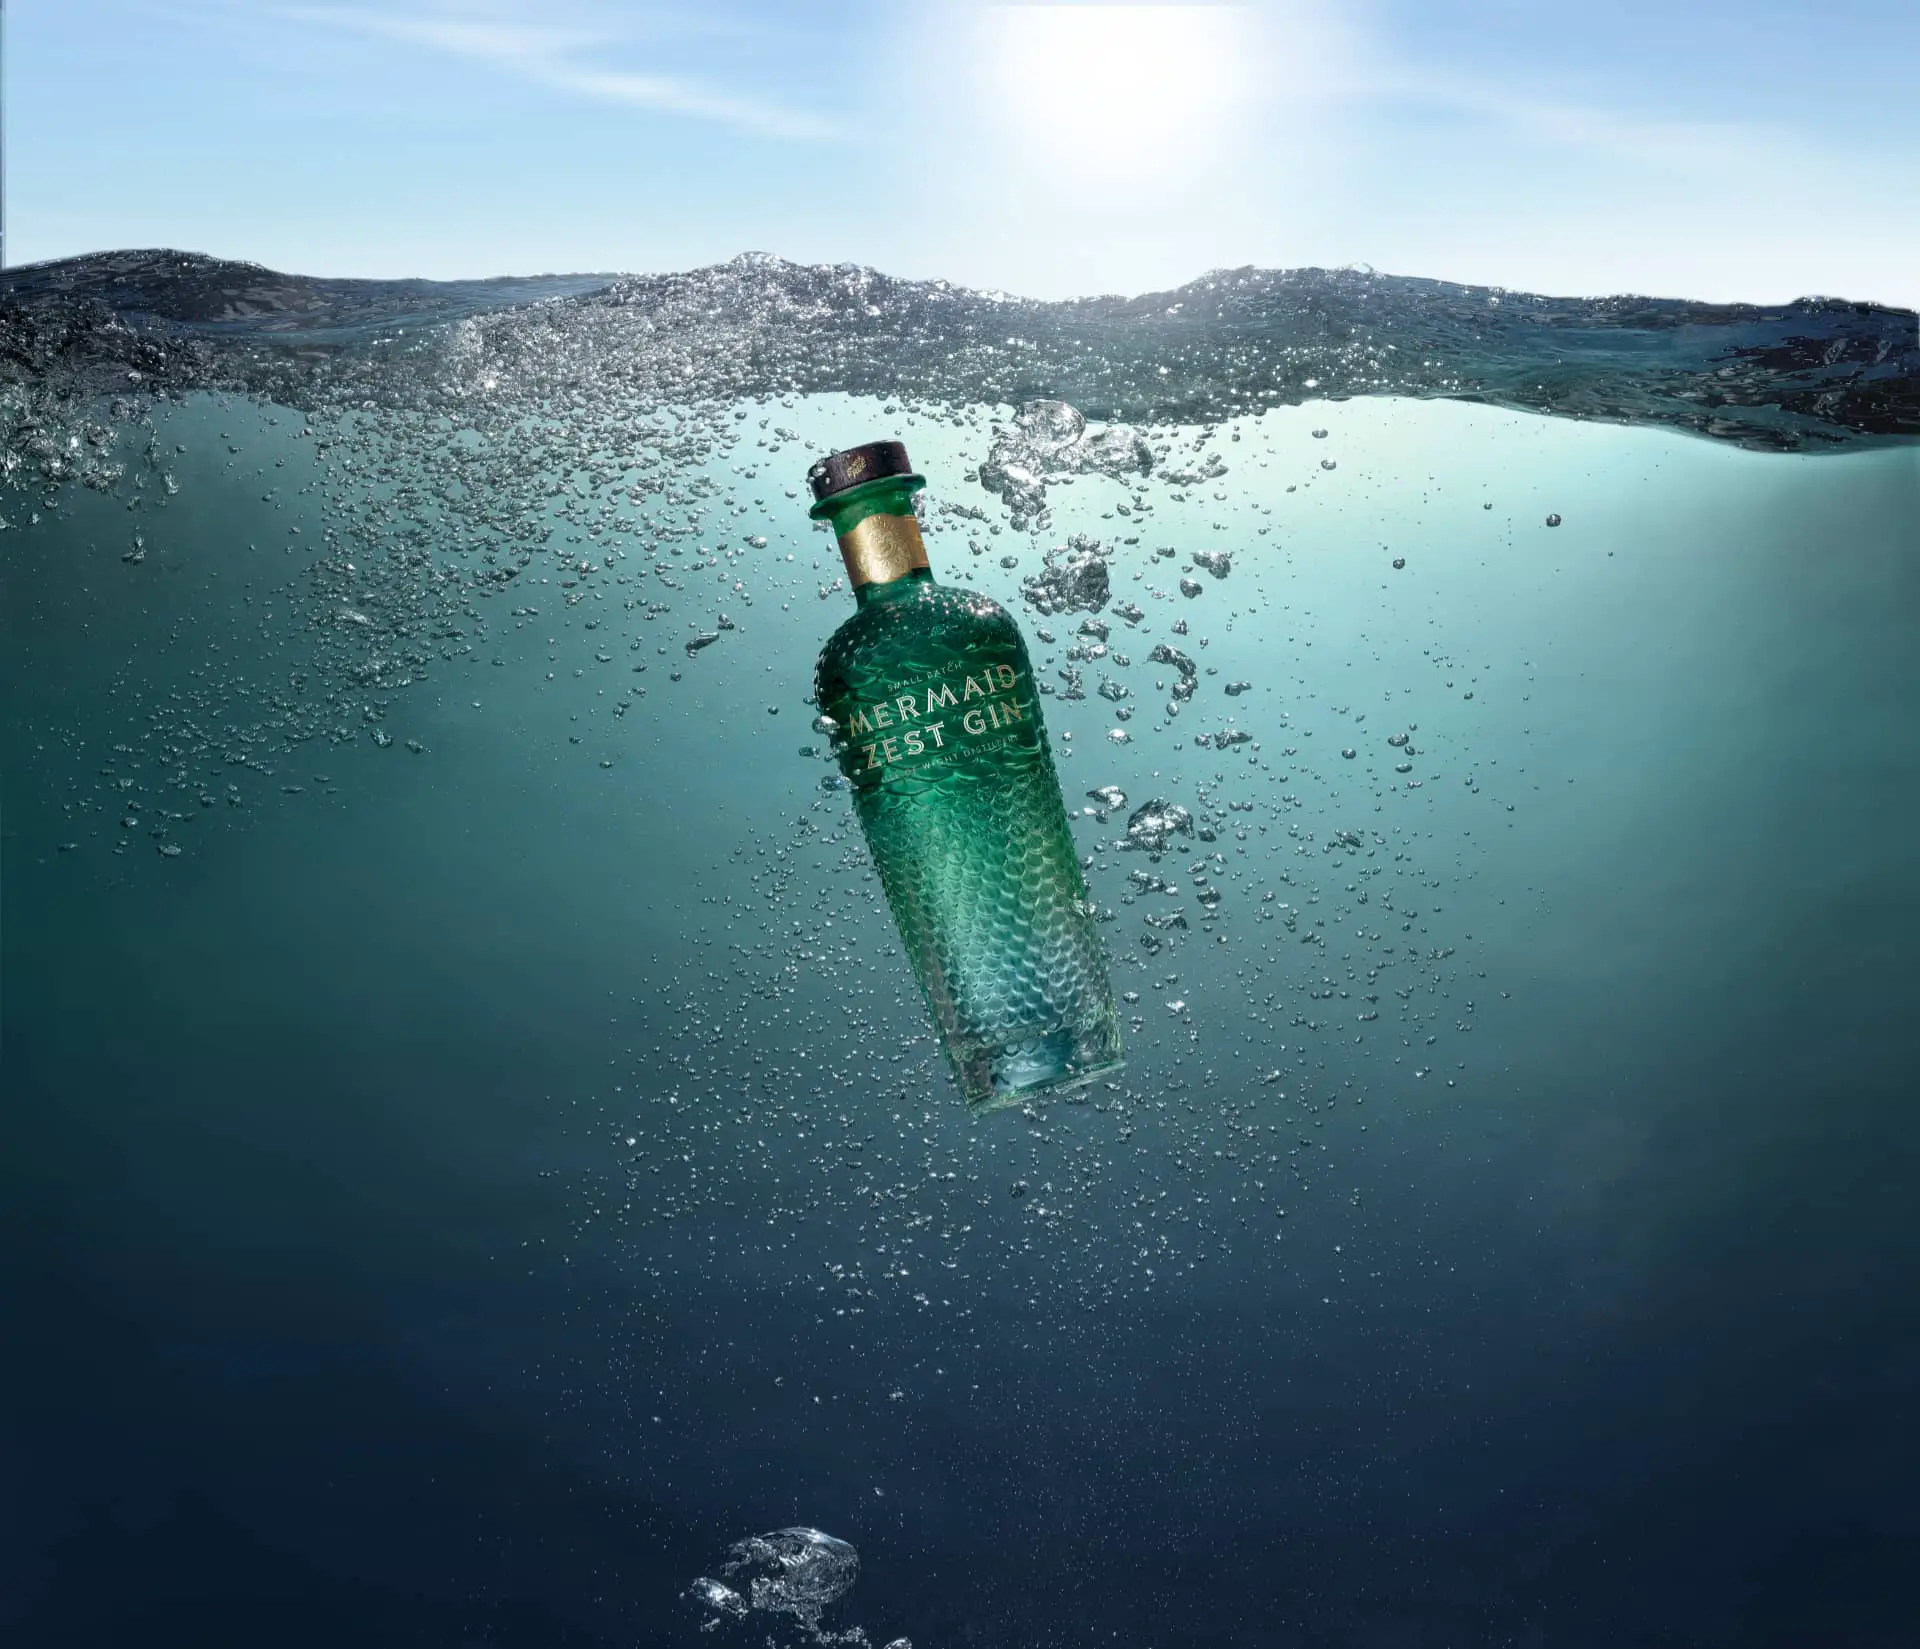 Mermaid Zest bottle in the sea